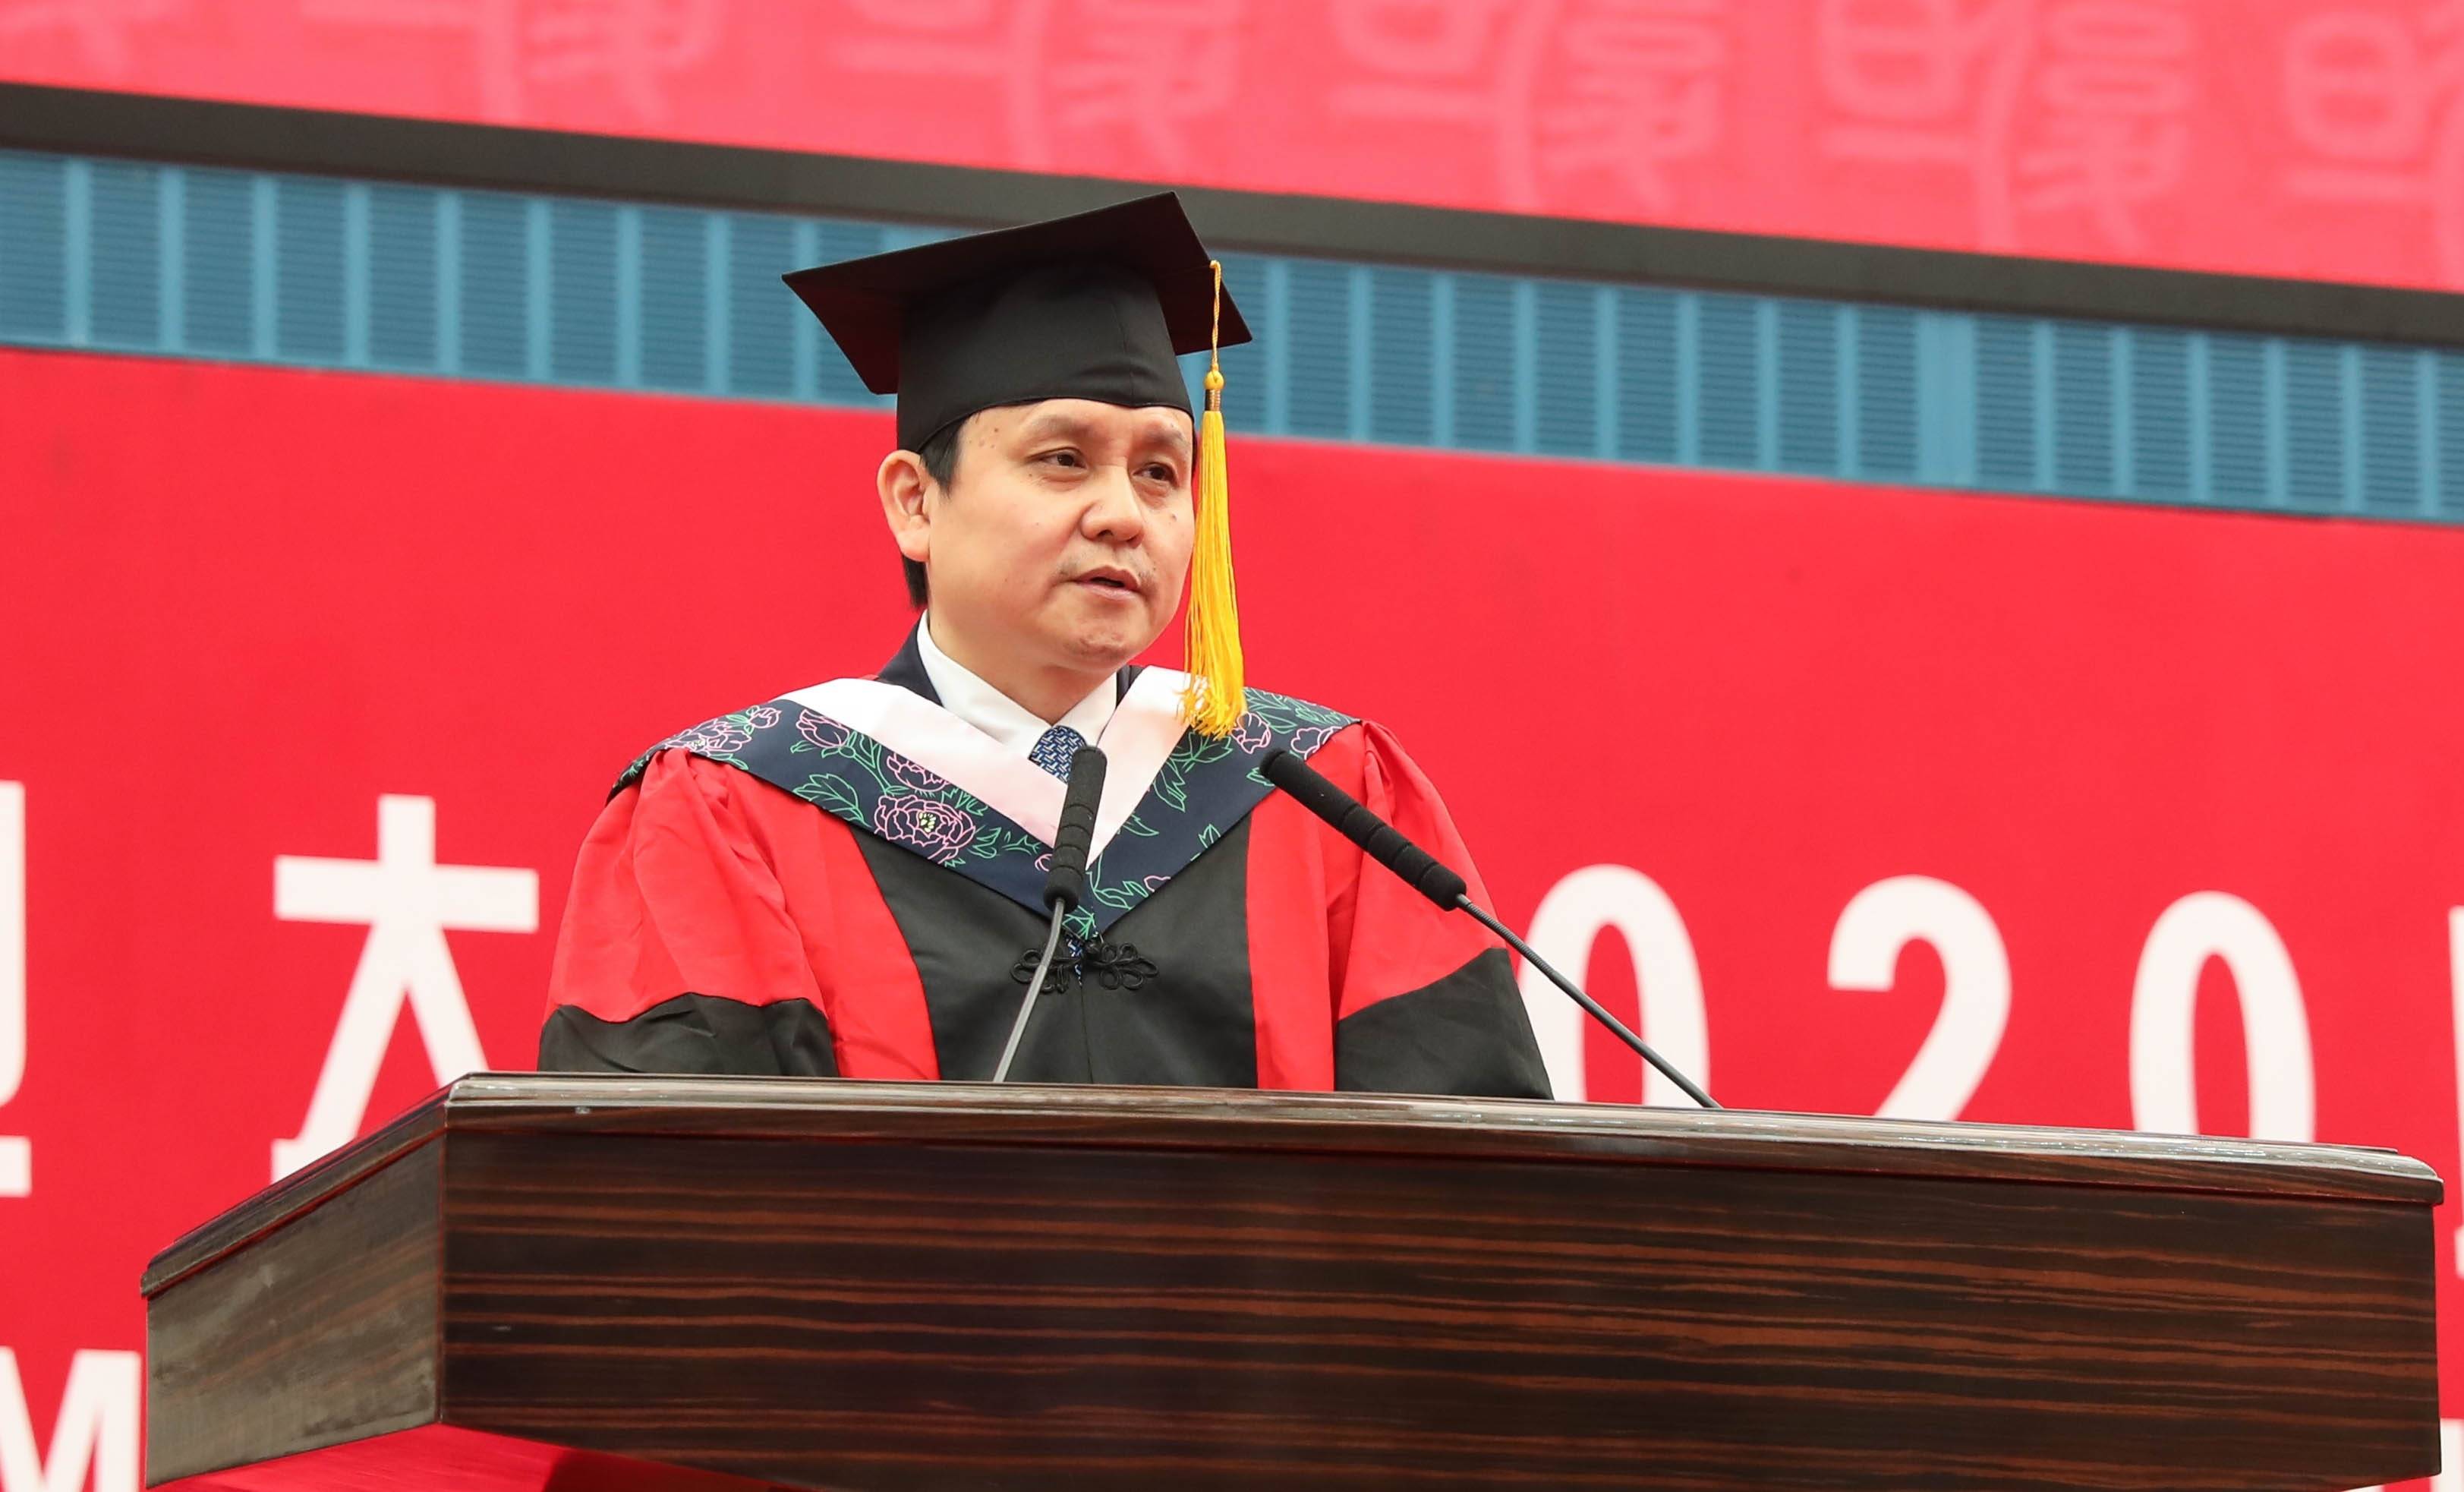 图源:复旦大学官方微博在毕业典礼中,张文宏作为教师代表发言,他表示